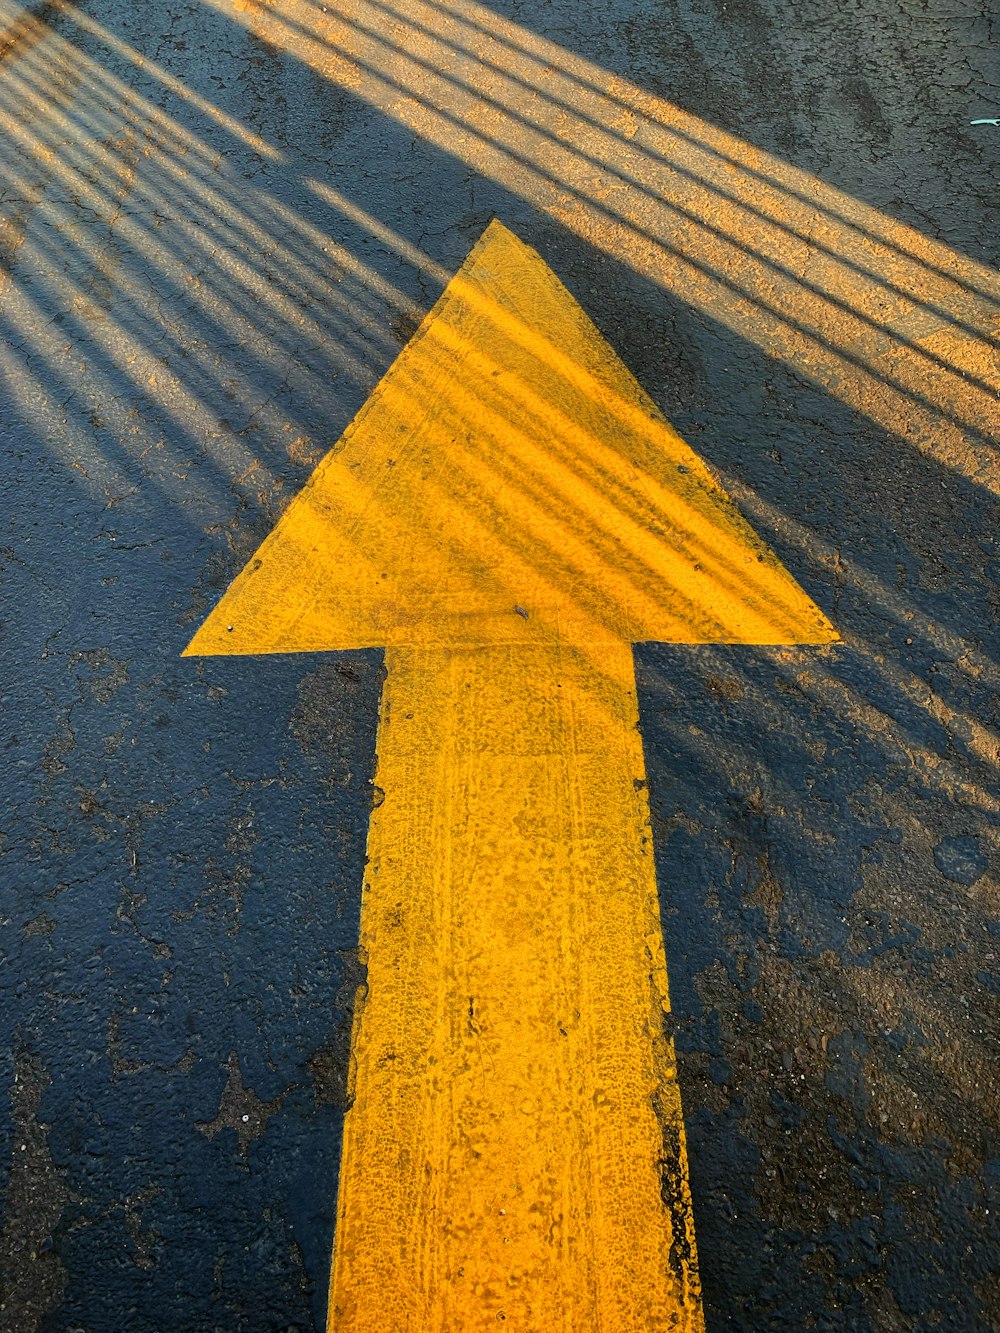 회색 콘크리트 도로의 노란색 화살표 기호